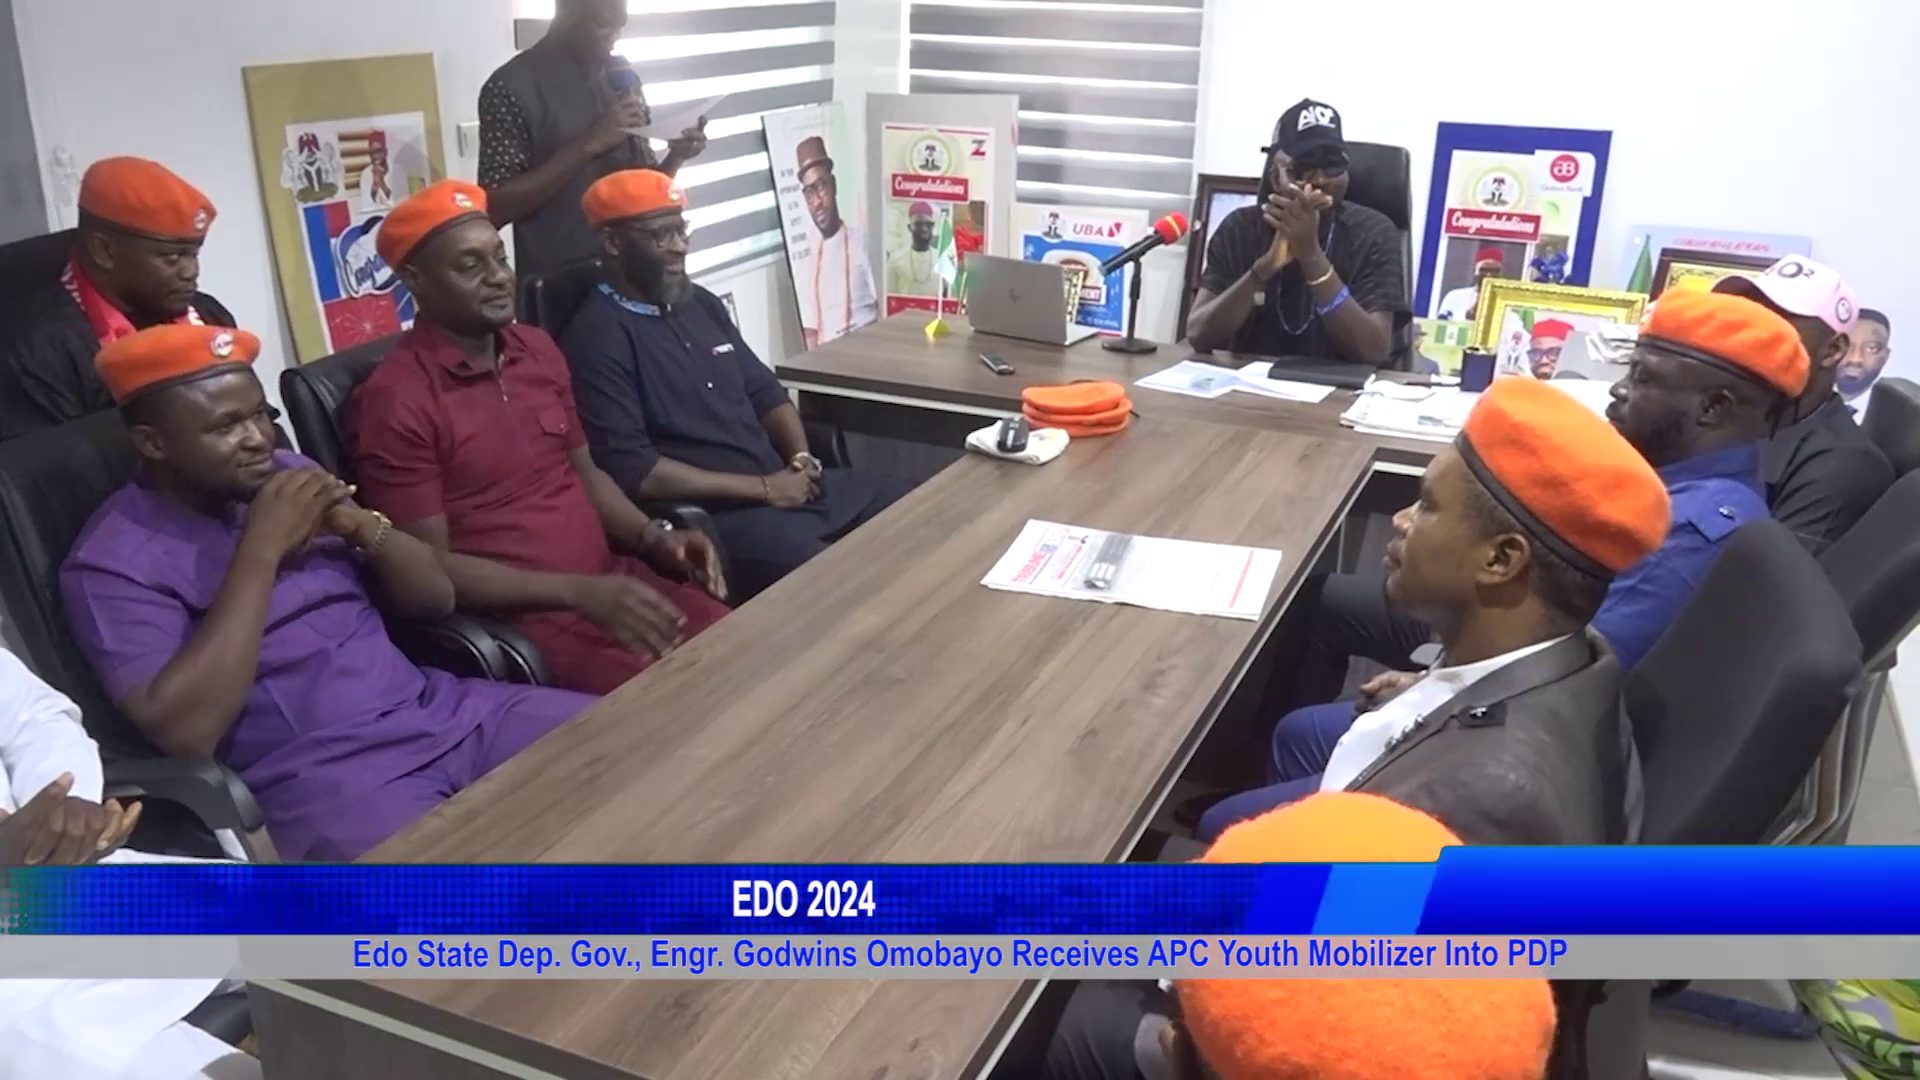 Edo State Dep. Gov., Engr. Godwins Omobayo Receives APC Youth Mobilizer Into PDP